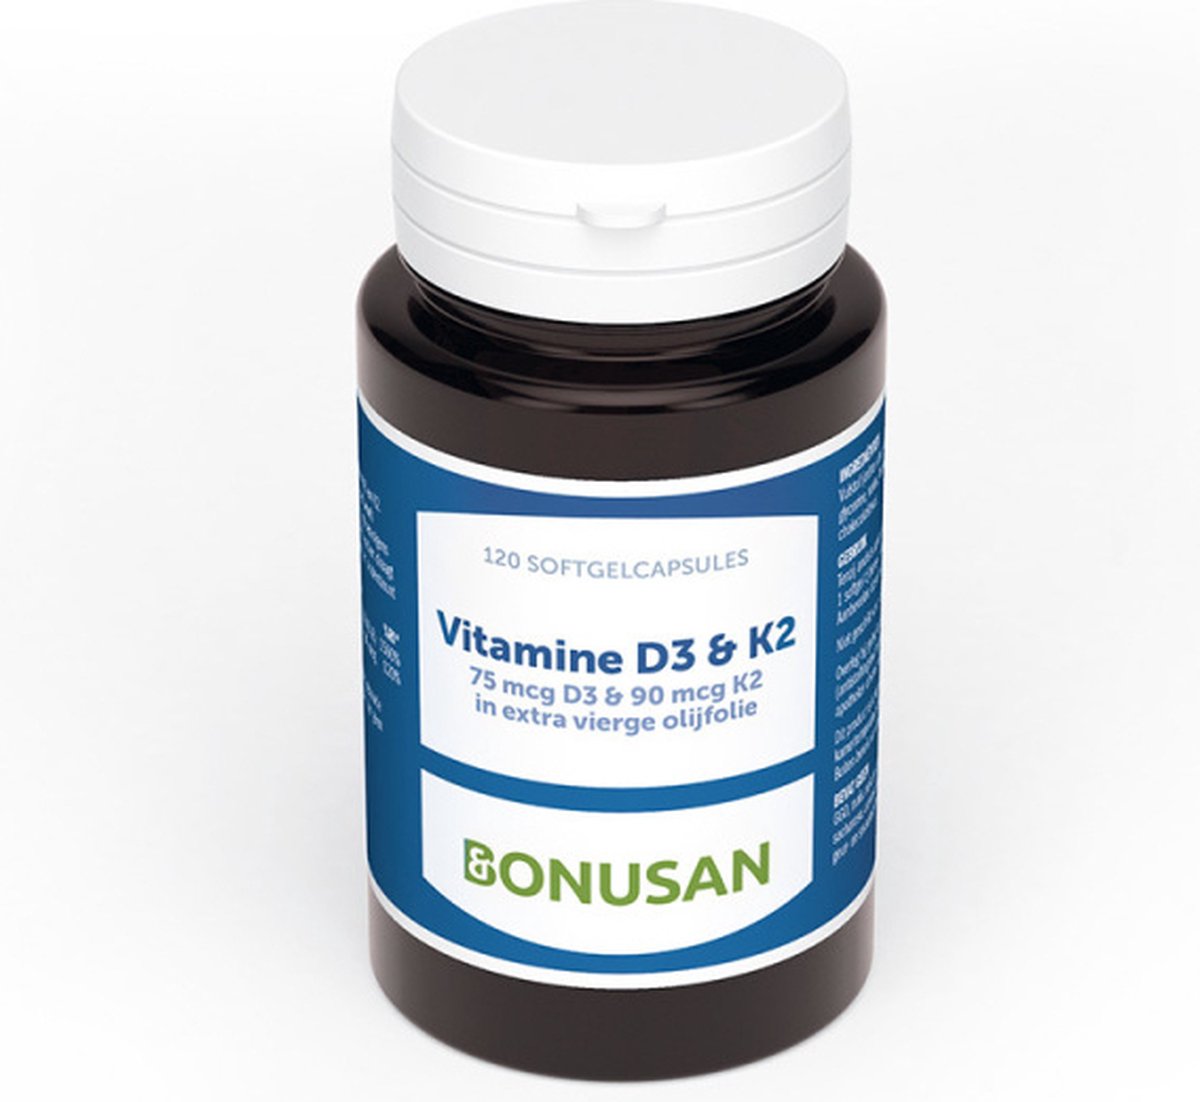 Bonusan - Vitamine D3 & K2 - 120 Softgels